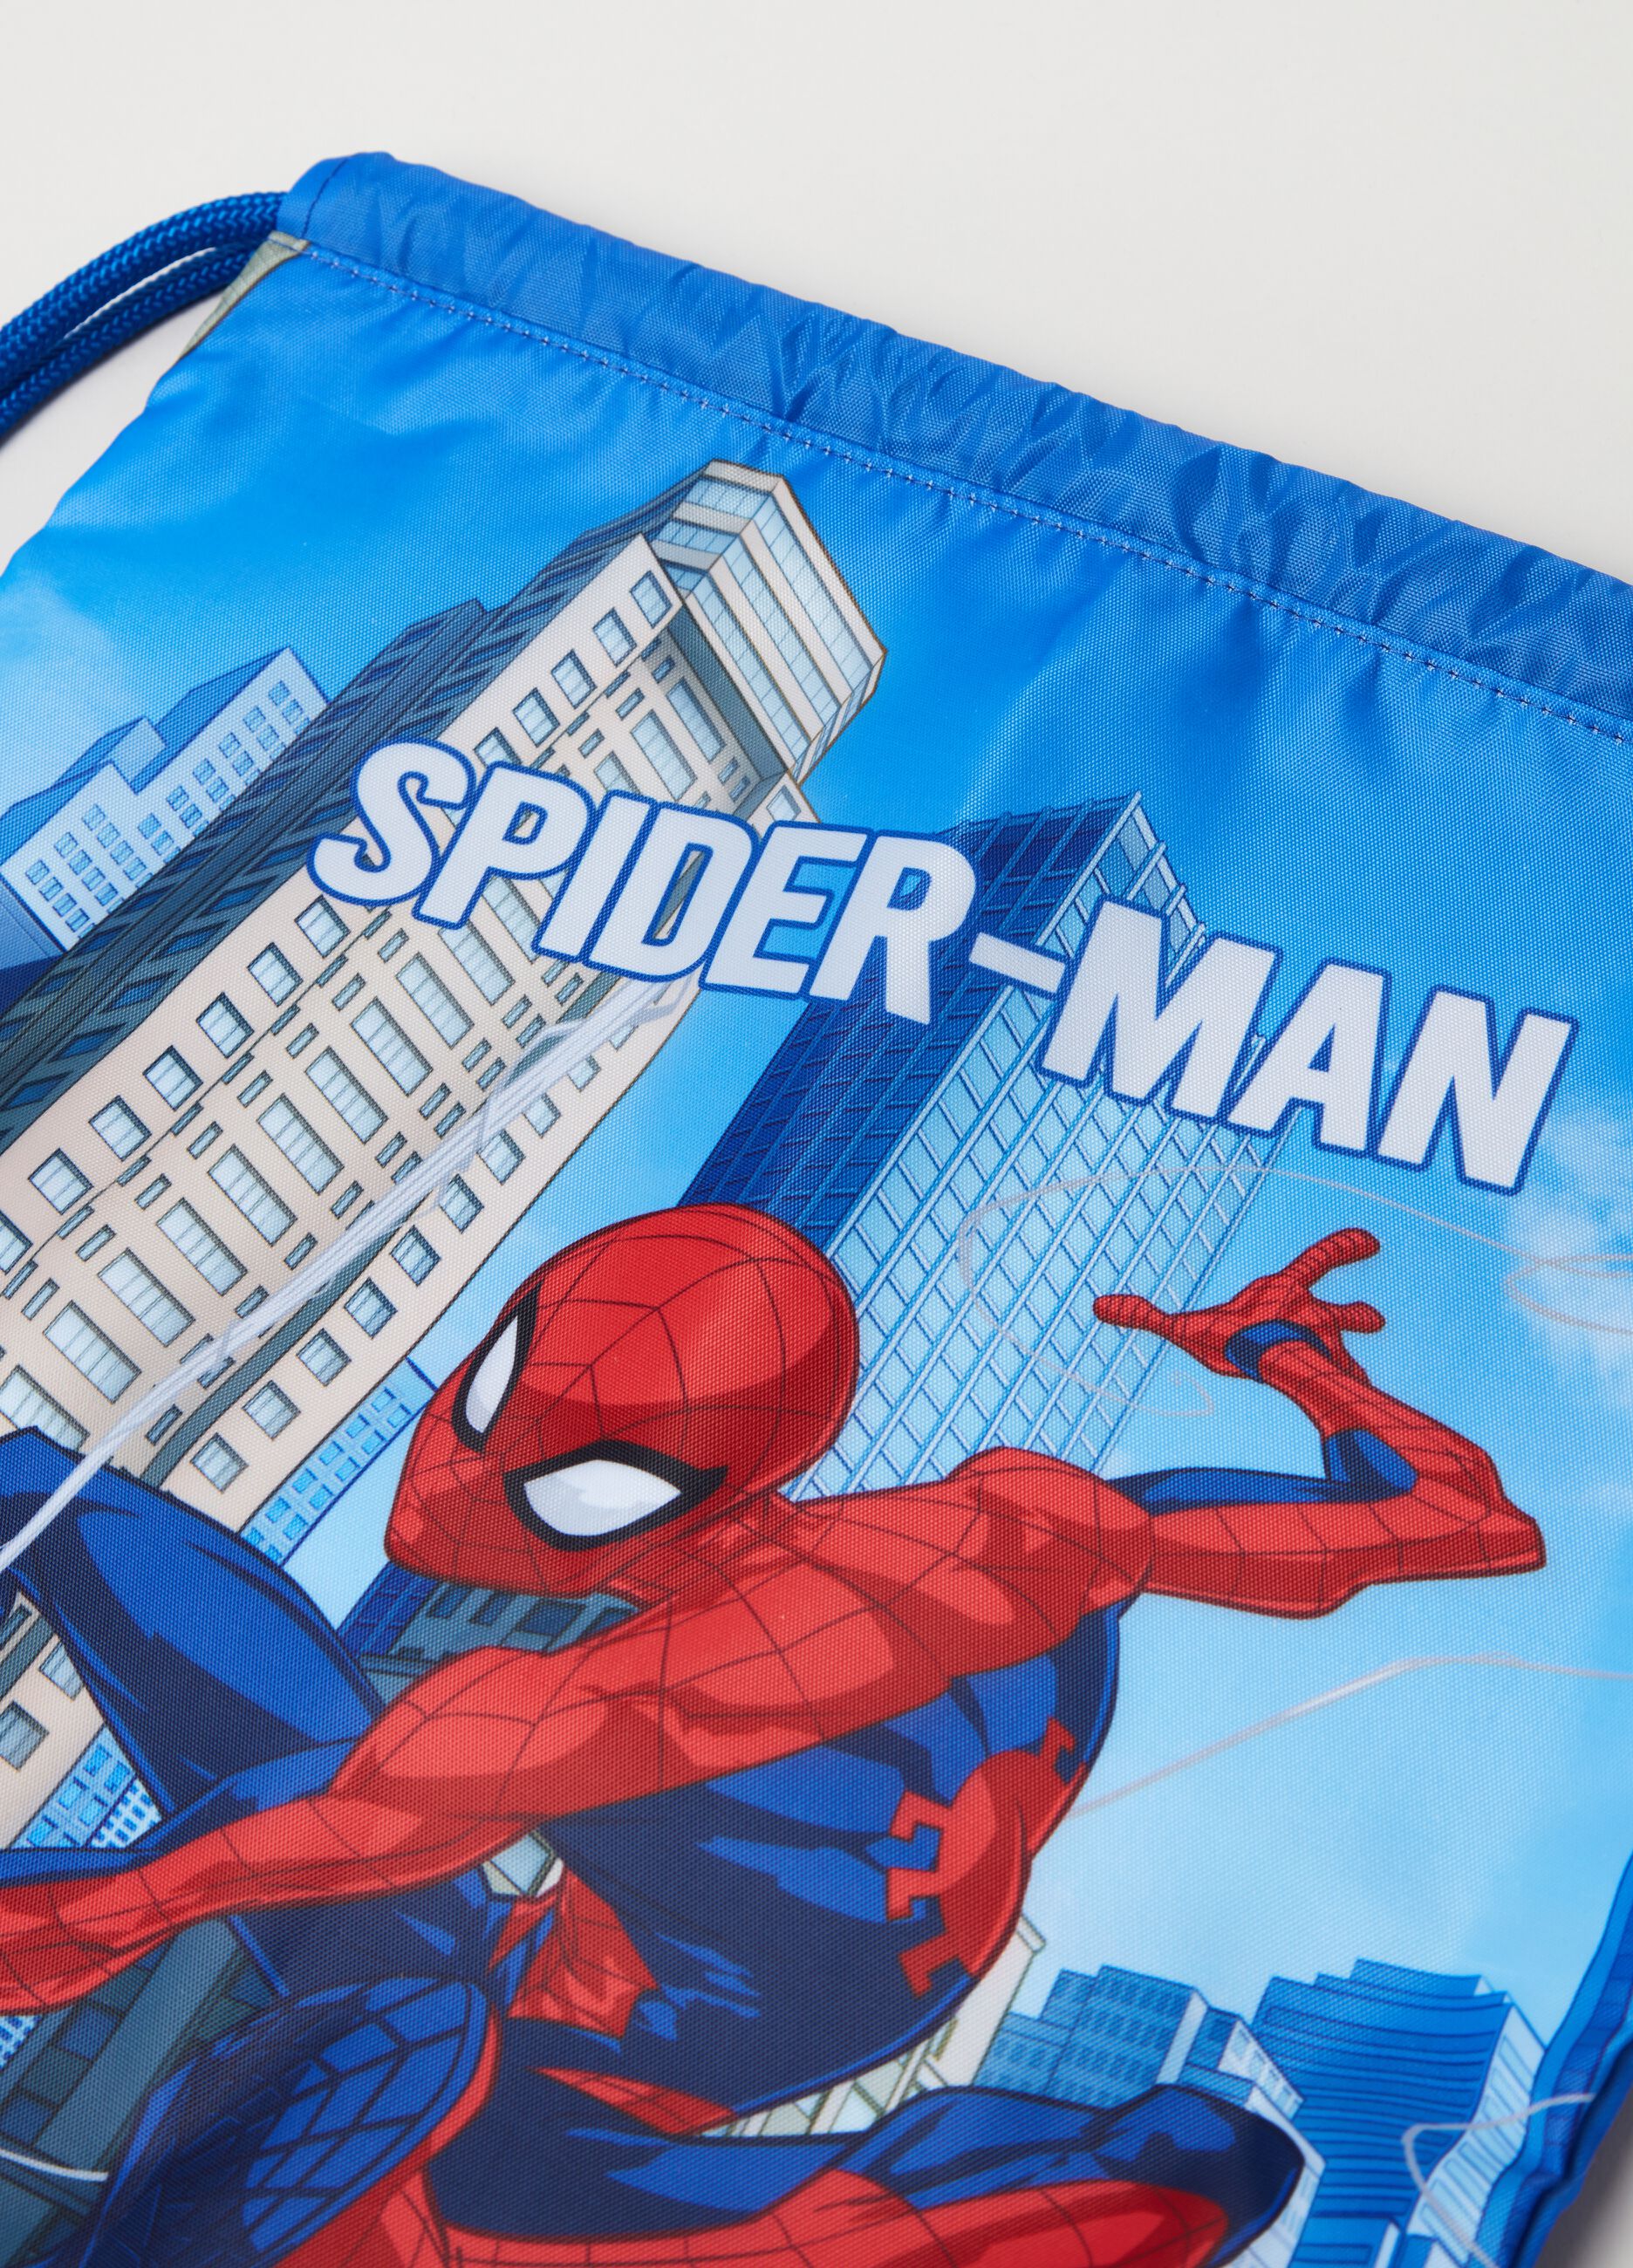 Marvel Spider-Man sack backpack